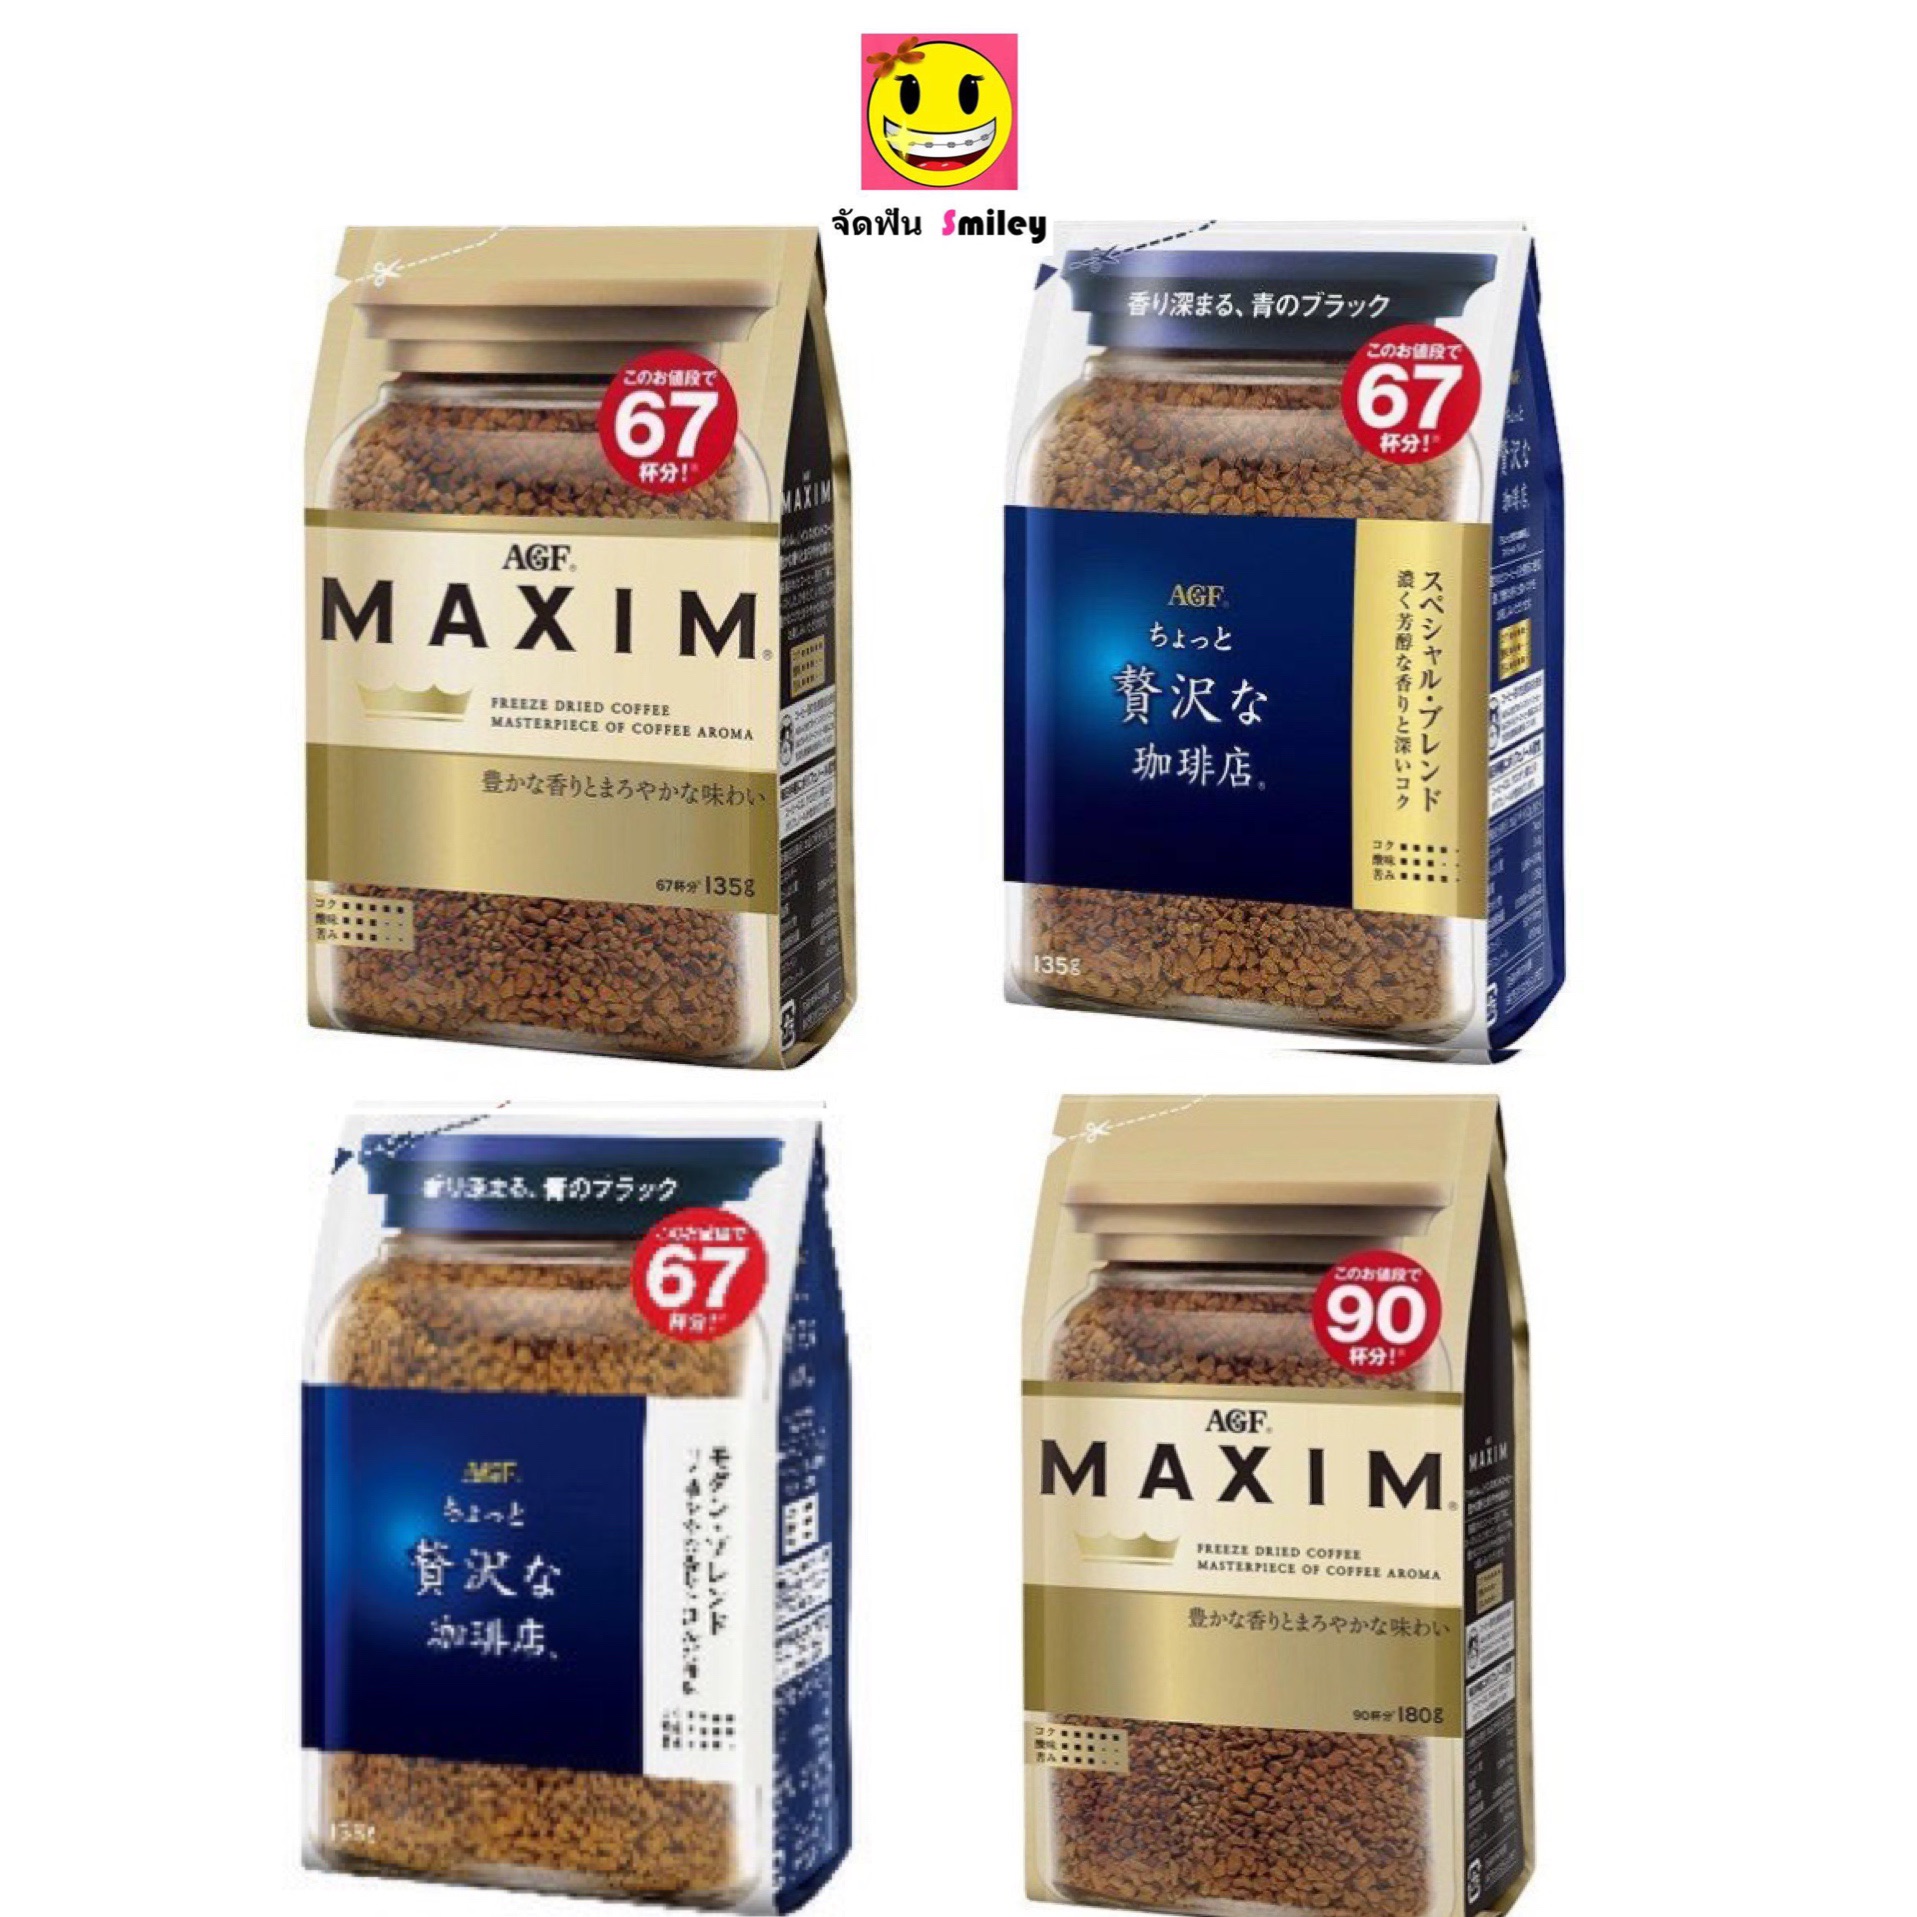 กาแฟ Maxim กาแฟแม็กซิม จากญี่ปุ่น แบบถุงเติม 135 กรัม มี 3 รส Aroma Selected, Special, Modern Luxury Blend หมดอายุ 07/22